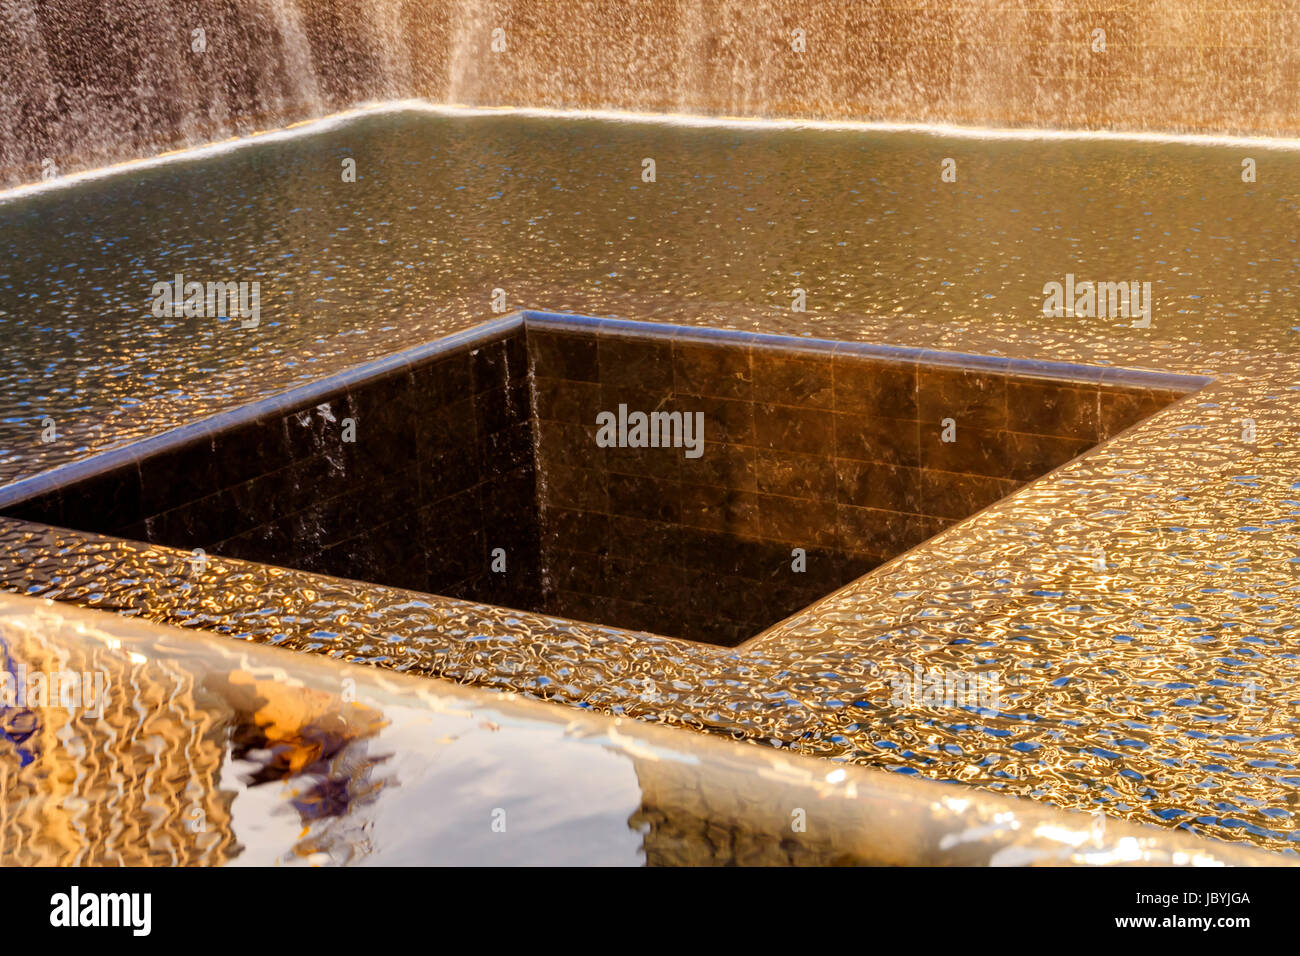 911 Memorial piscina fontana a cascata astratte riflessioni di New York New York. La piscina è nella fondazione di uno dei due World Trade Center edifici. L'acqua cade nel foro della fondazione. Foto Stock